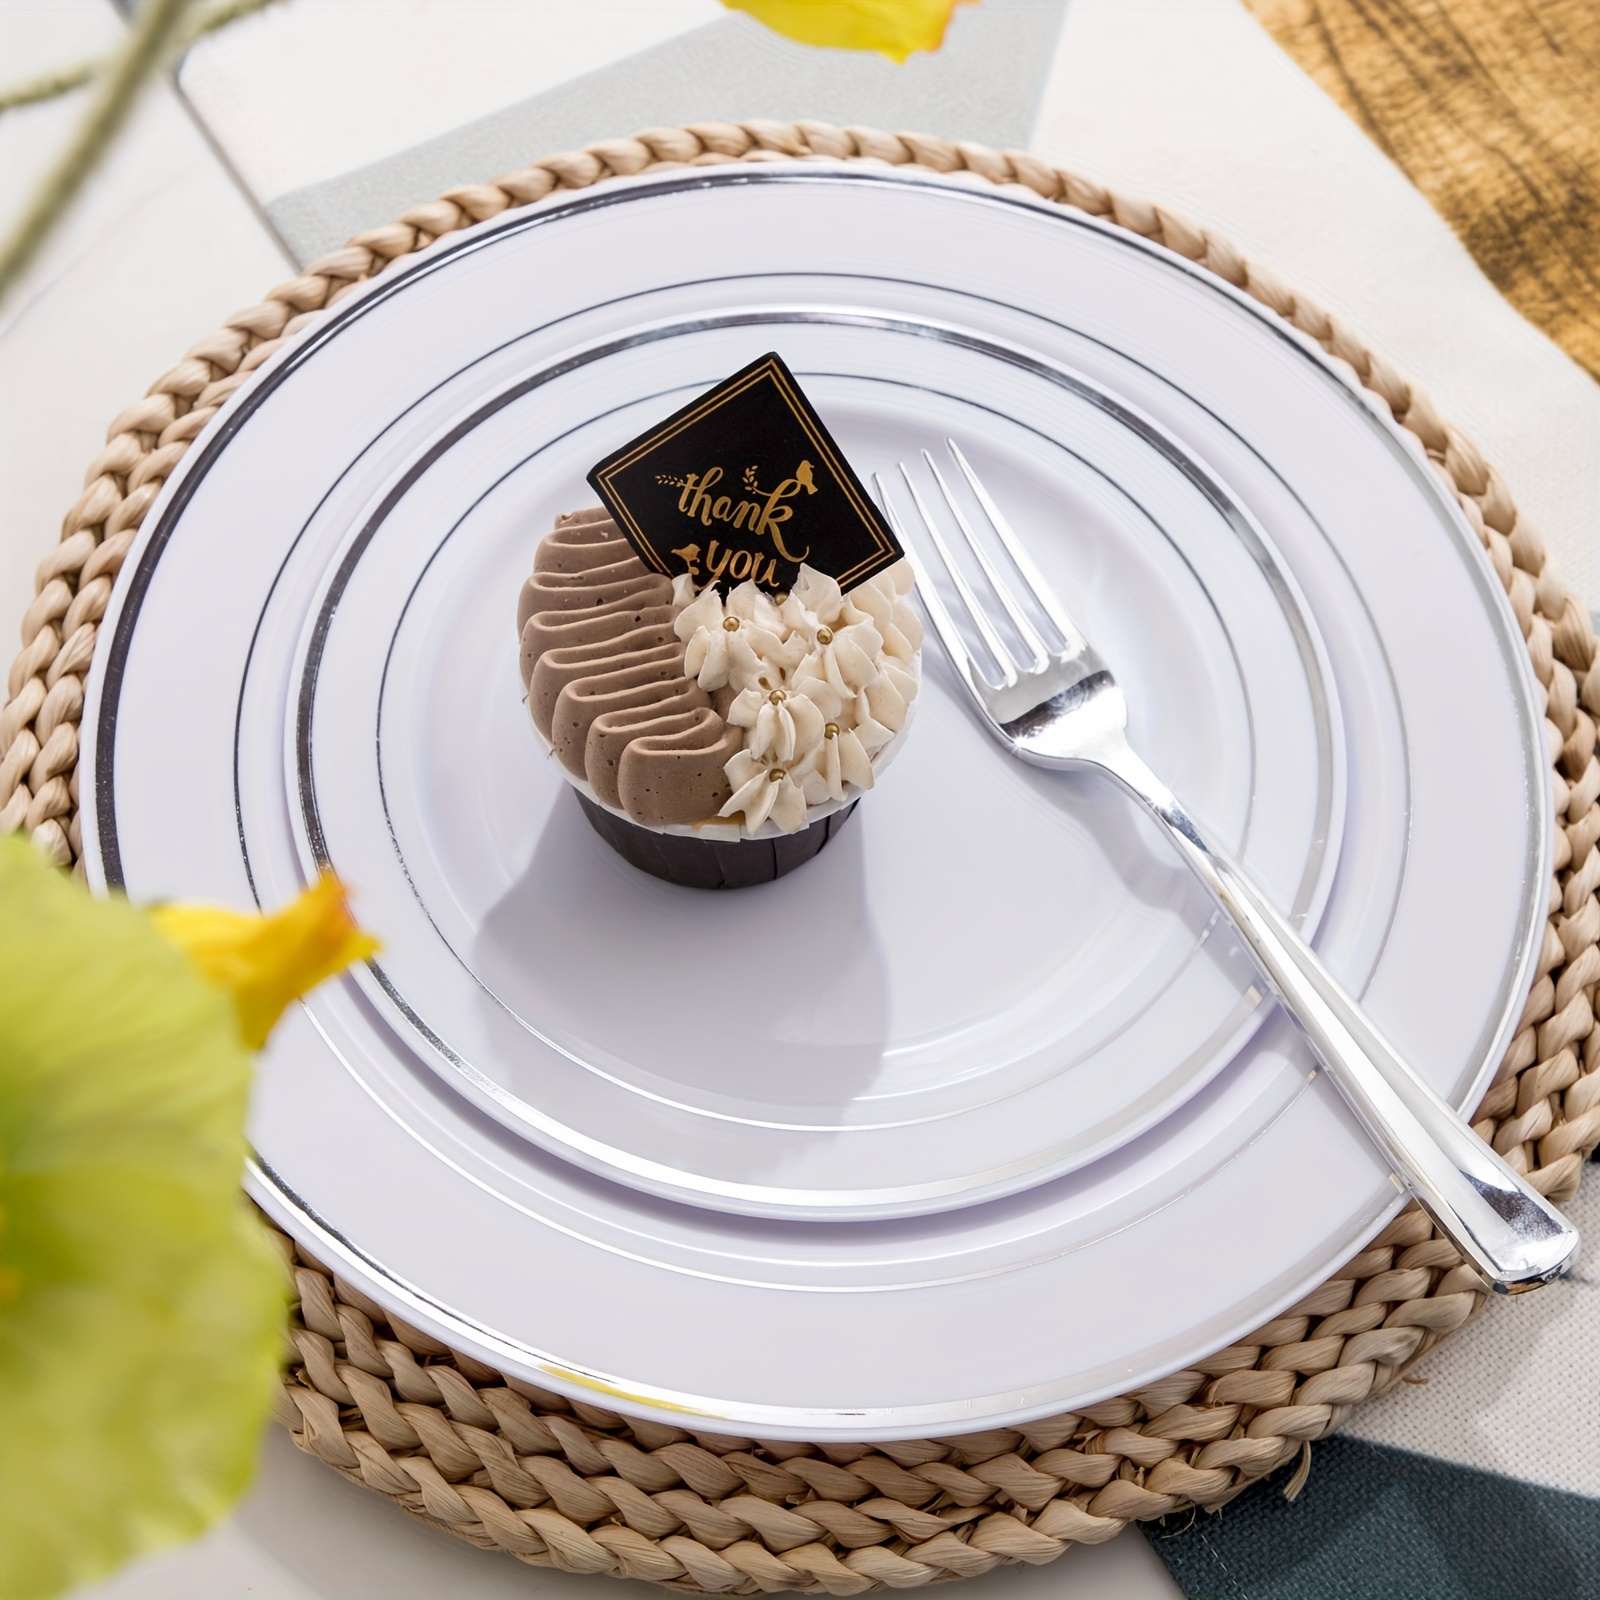 KIRE 60 platos desechables blancos – Platos de plástico blanco resistentes  para fiestas/bodas – Incluye 30 platos llanos blancos de 10.25 pulgadas y